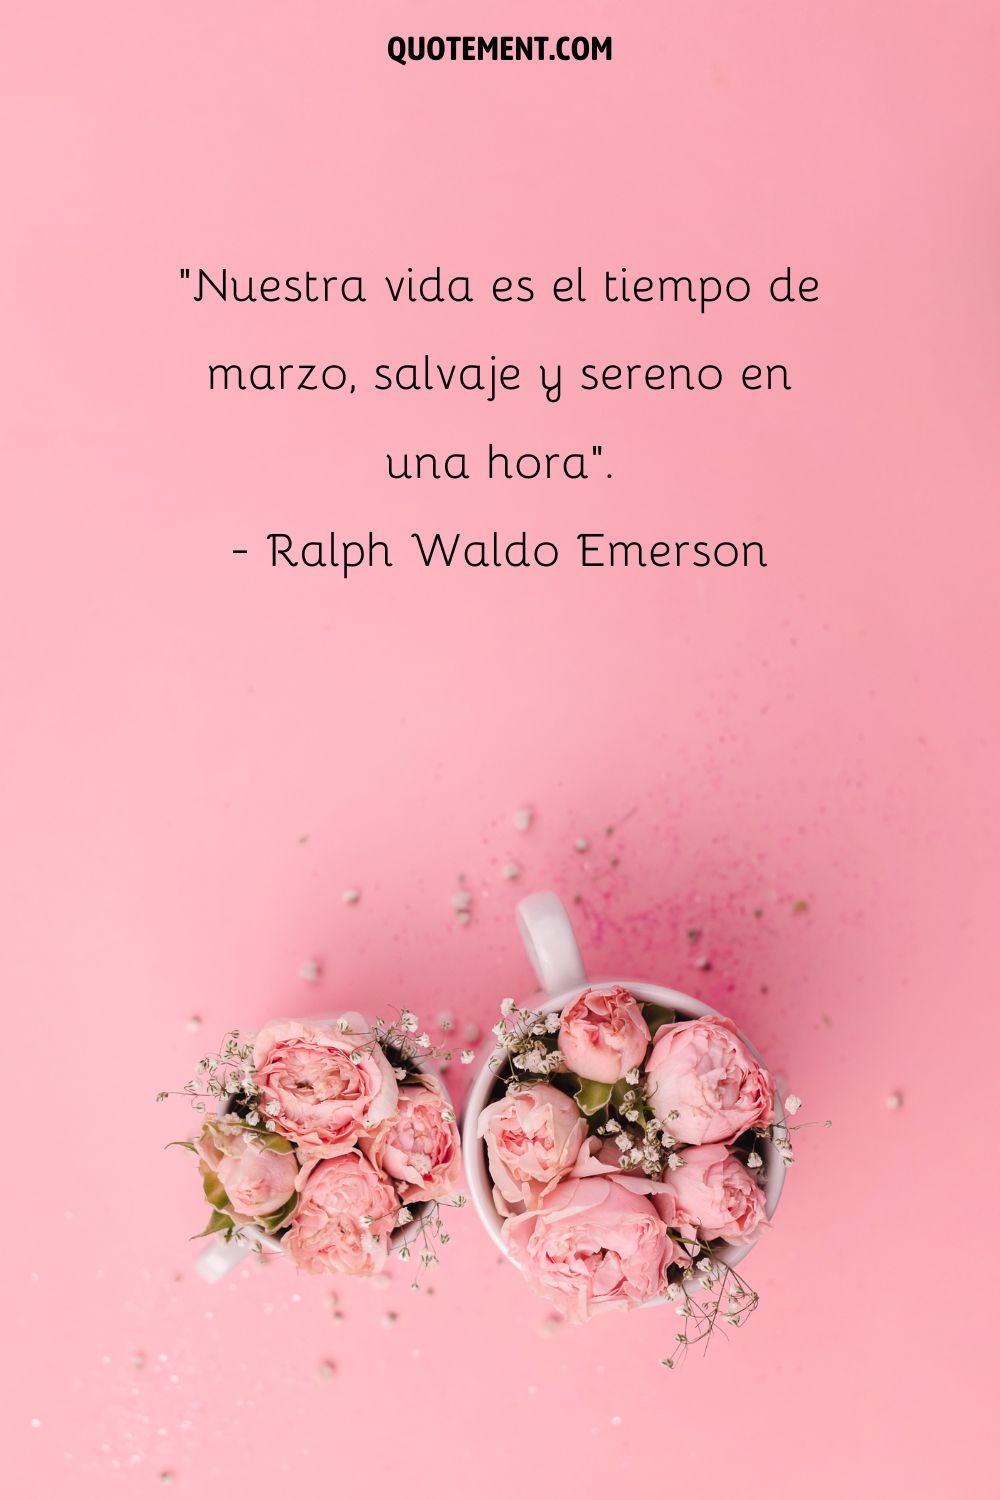 Nuestra vida es el tiempo de marzo, salvaje y sereno en una hora. - Ralph Waldo Emerson